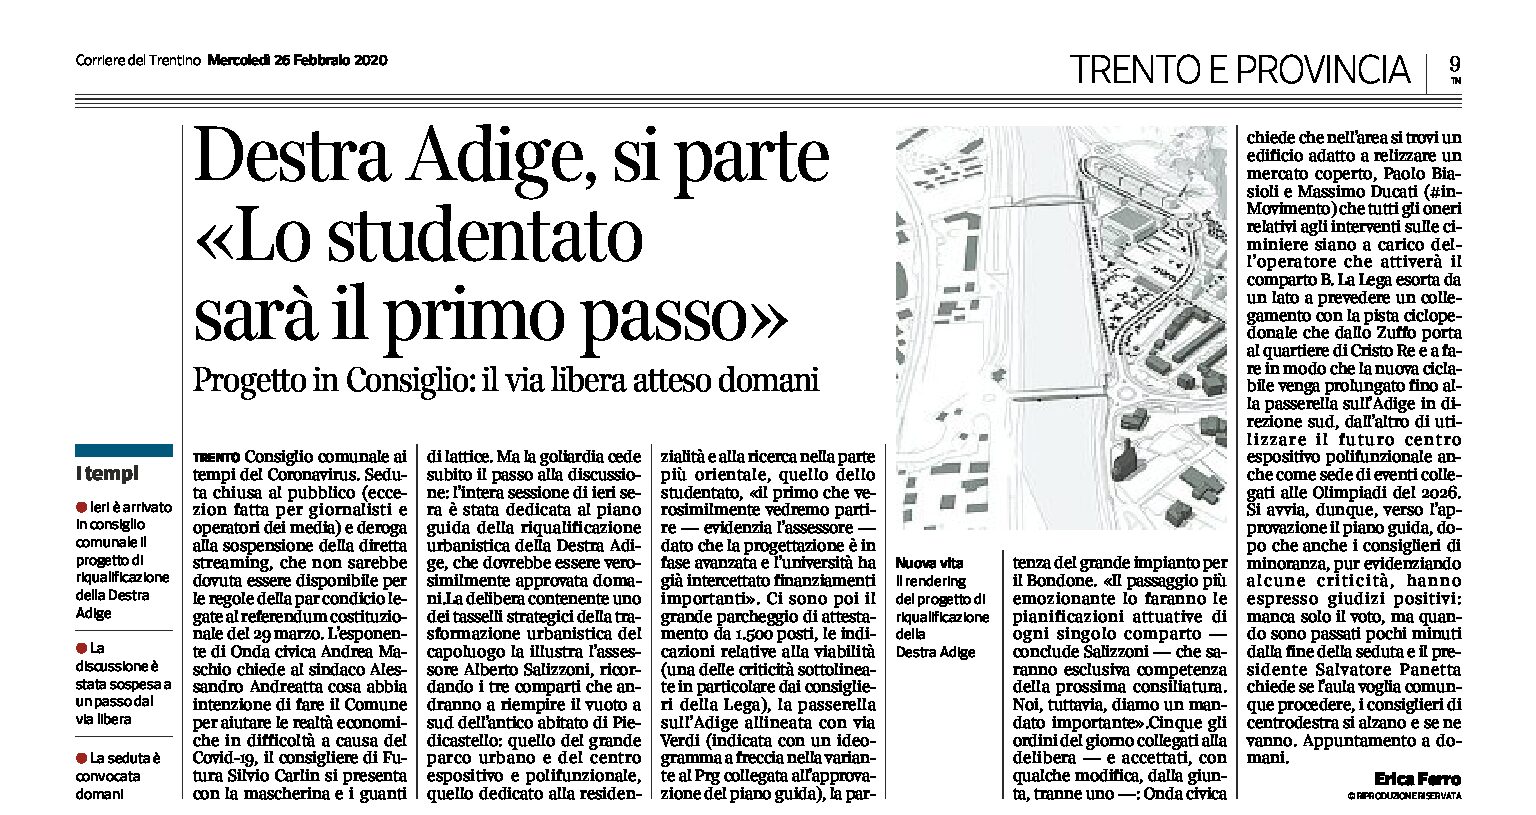 Trento: Destra Adige, si parte. Lo studentato sarà il primo passo